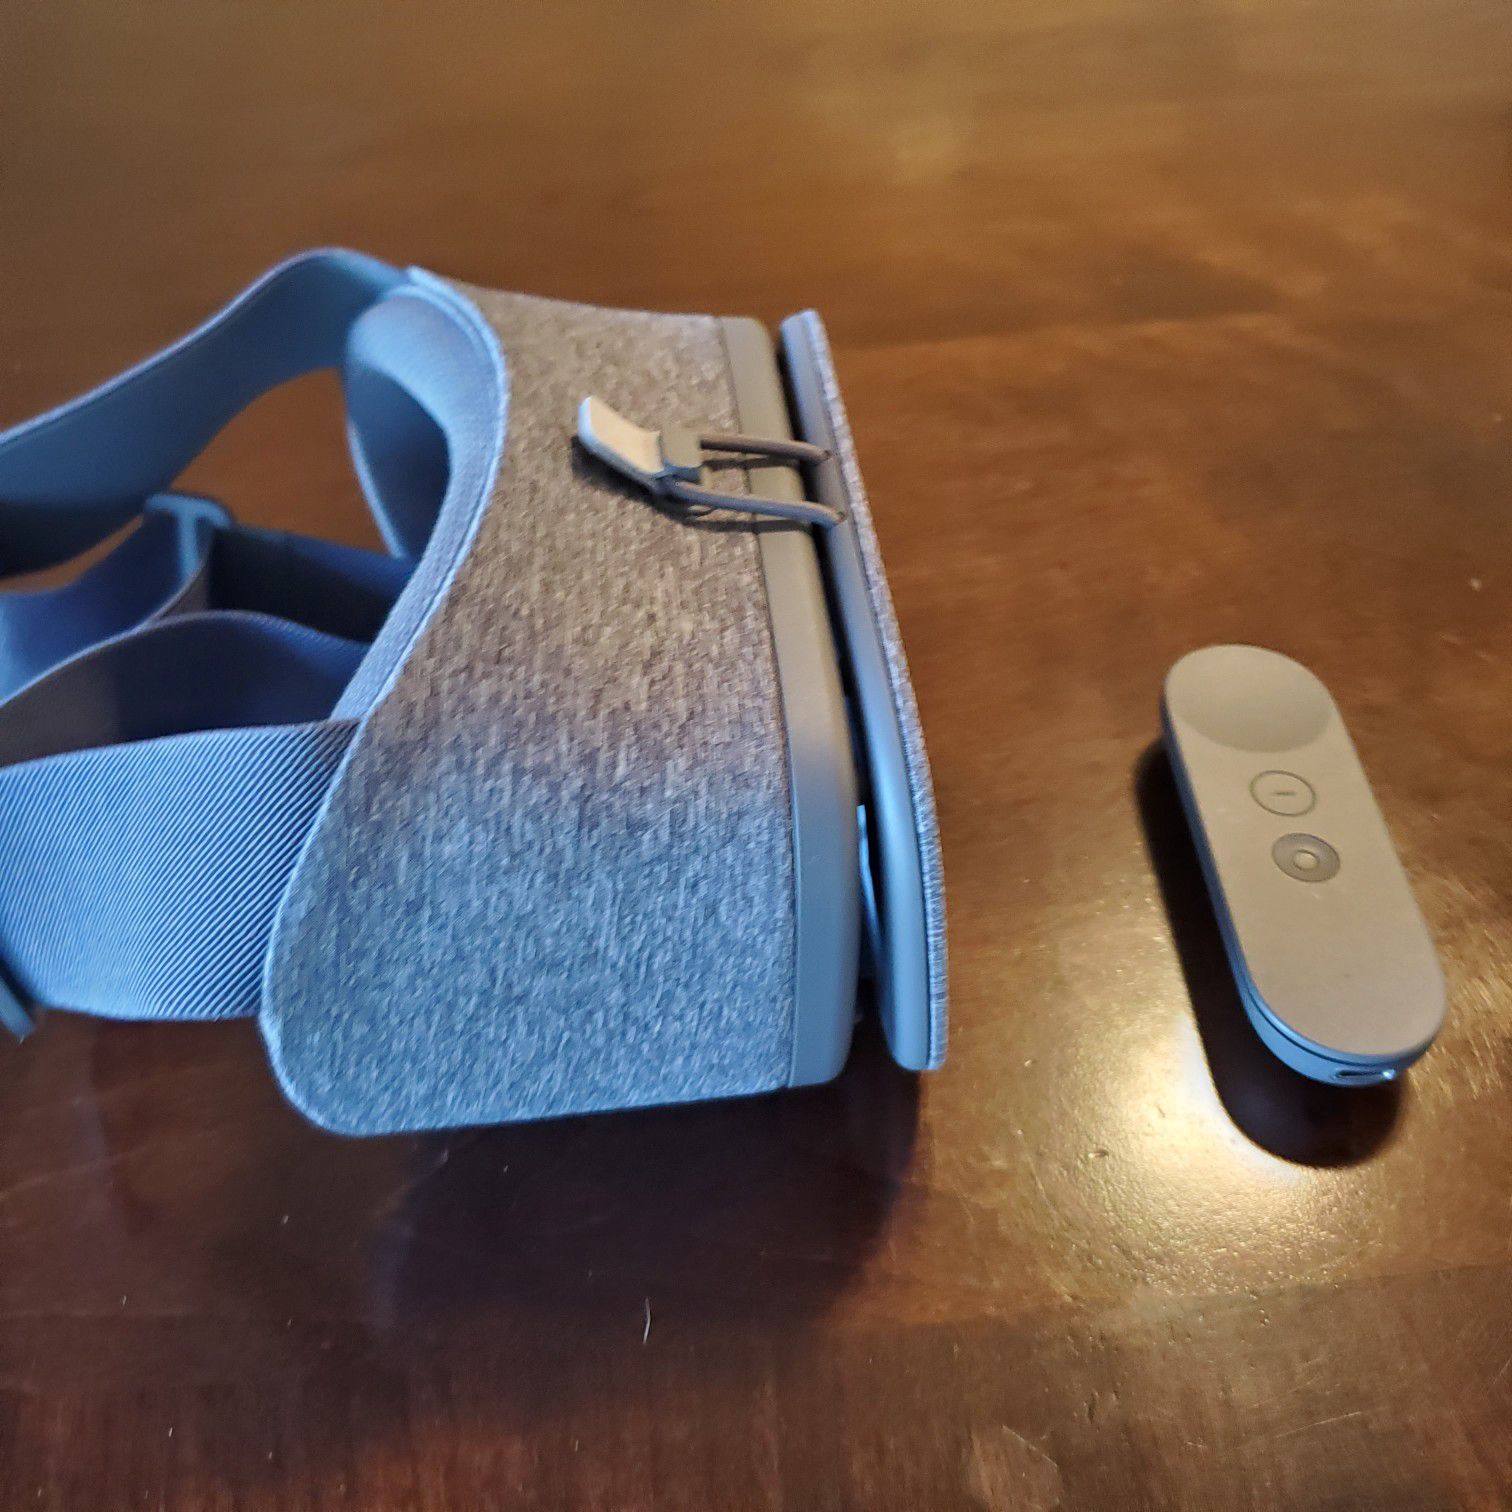 Google Daydream view VR